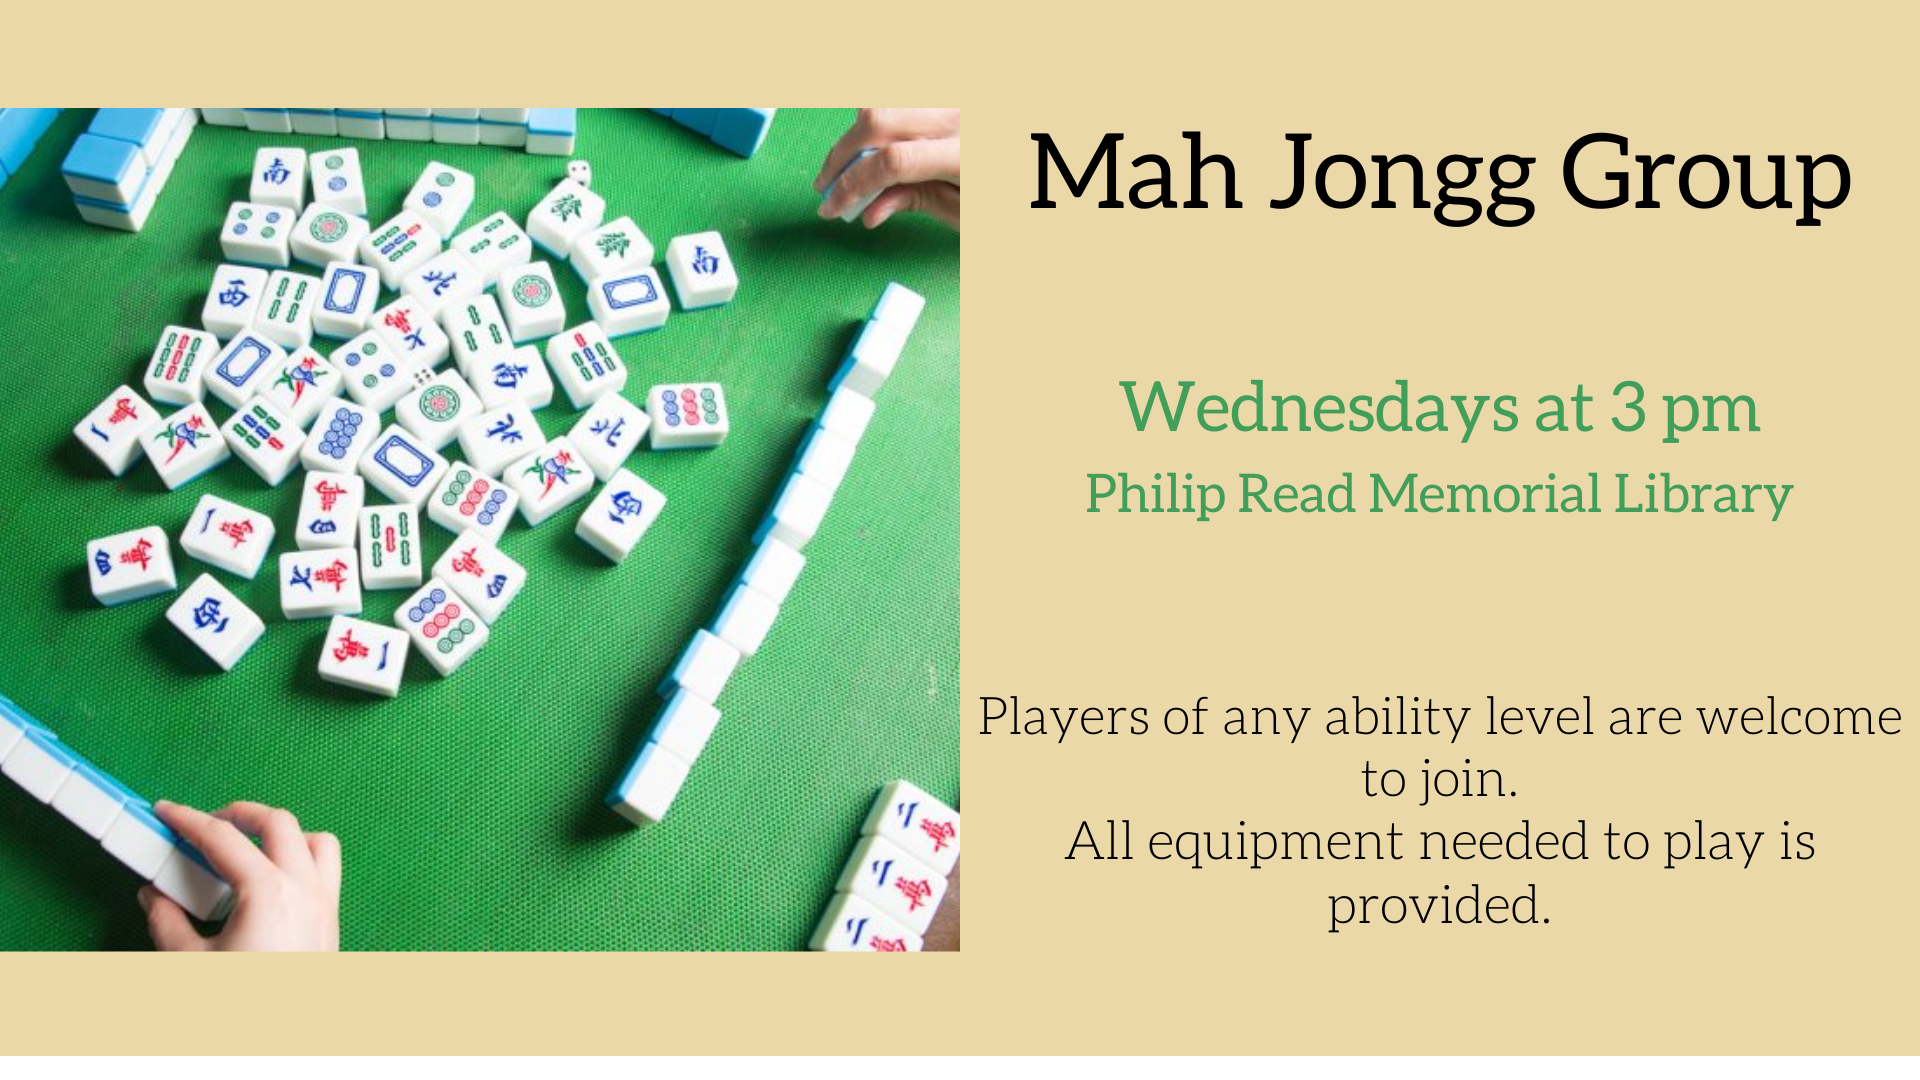 Mah Jongg group, Philip Read Memorial Library